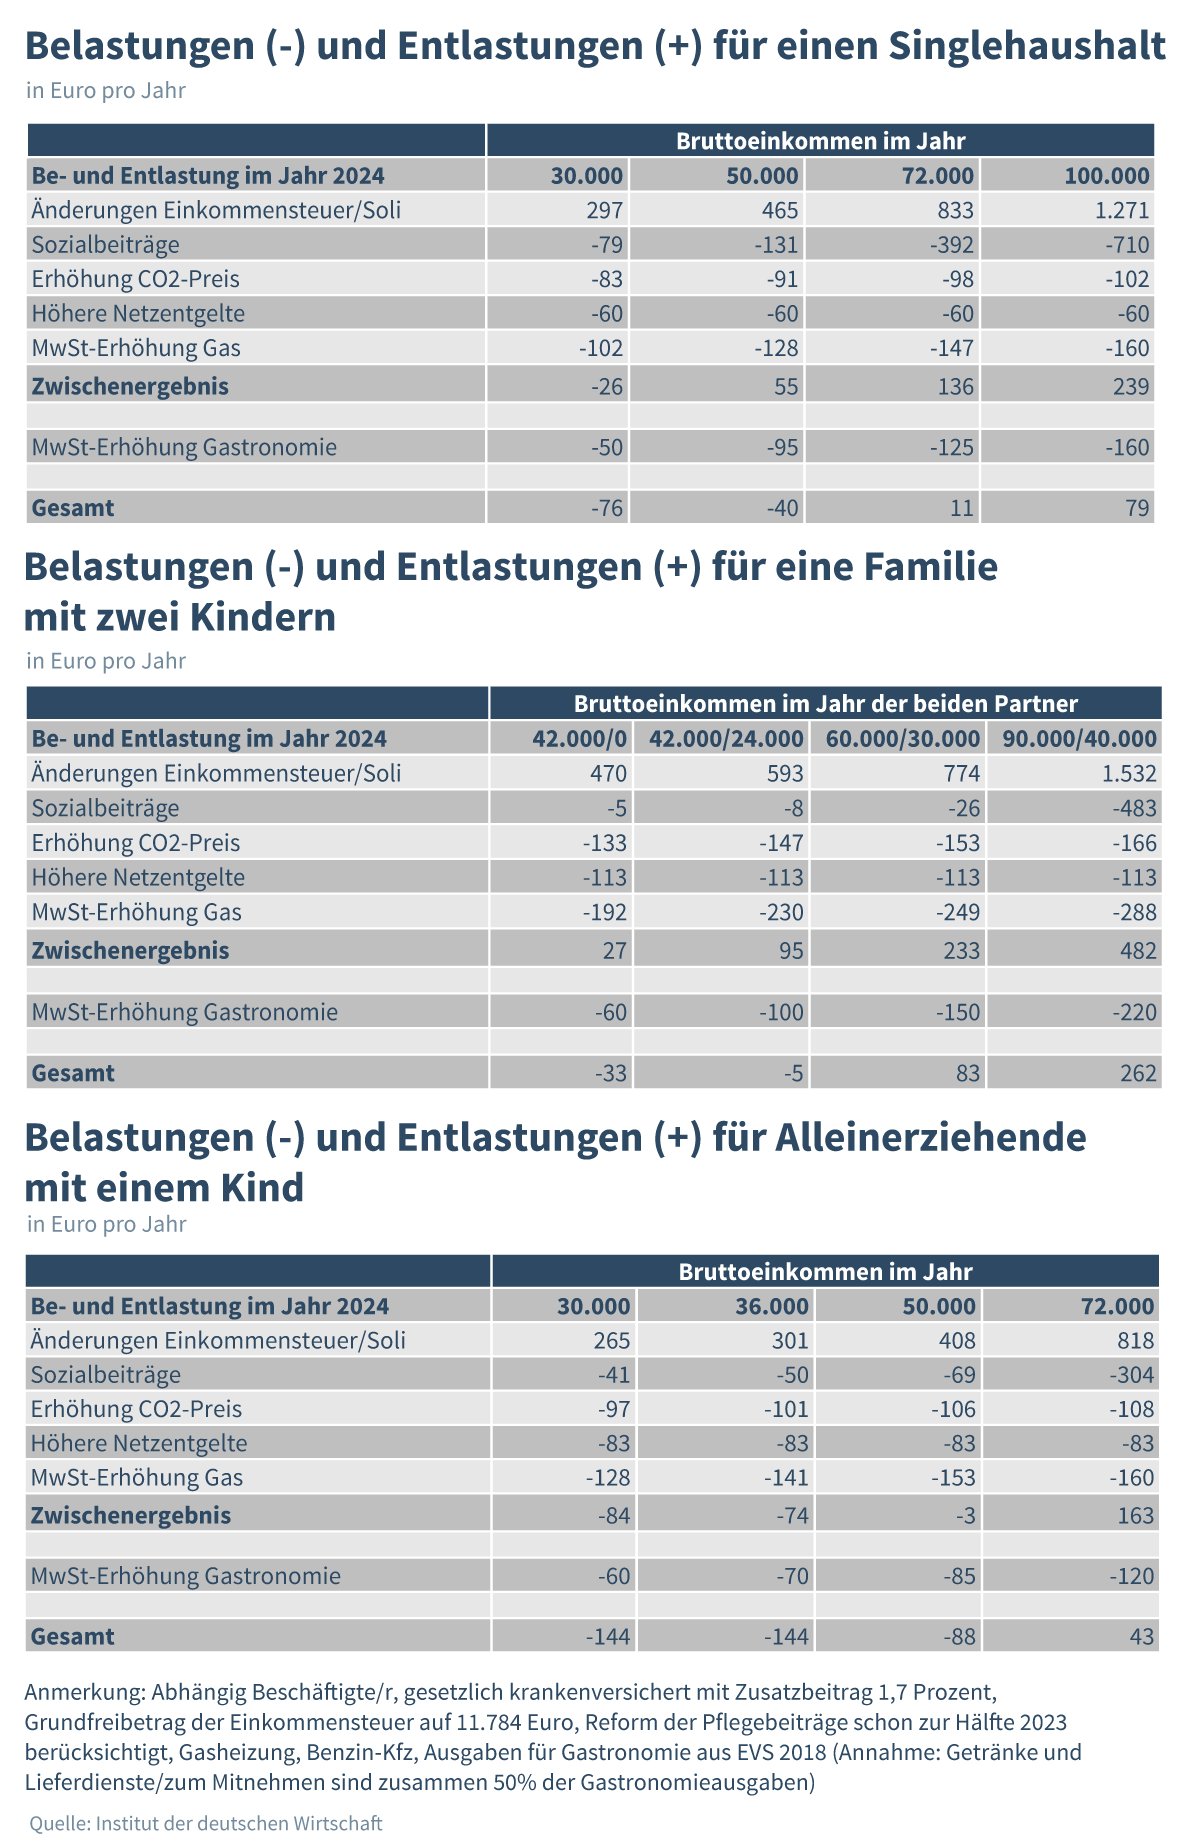 Die Grafik zeigt drei Tabellen zur politisch bedingten Be- und Entlastung in deutschen Haushalten für das Jahr 2024. Quelle: Bildschirmfoto/IW Köln